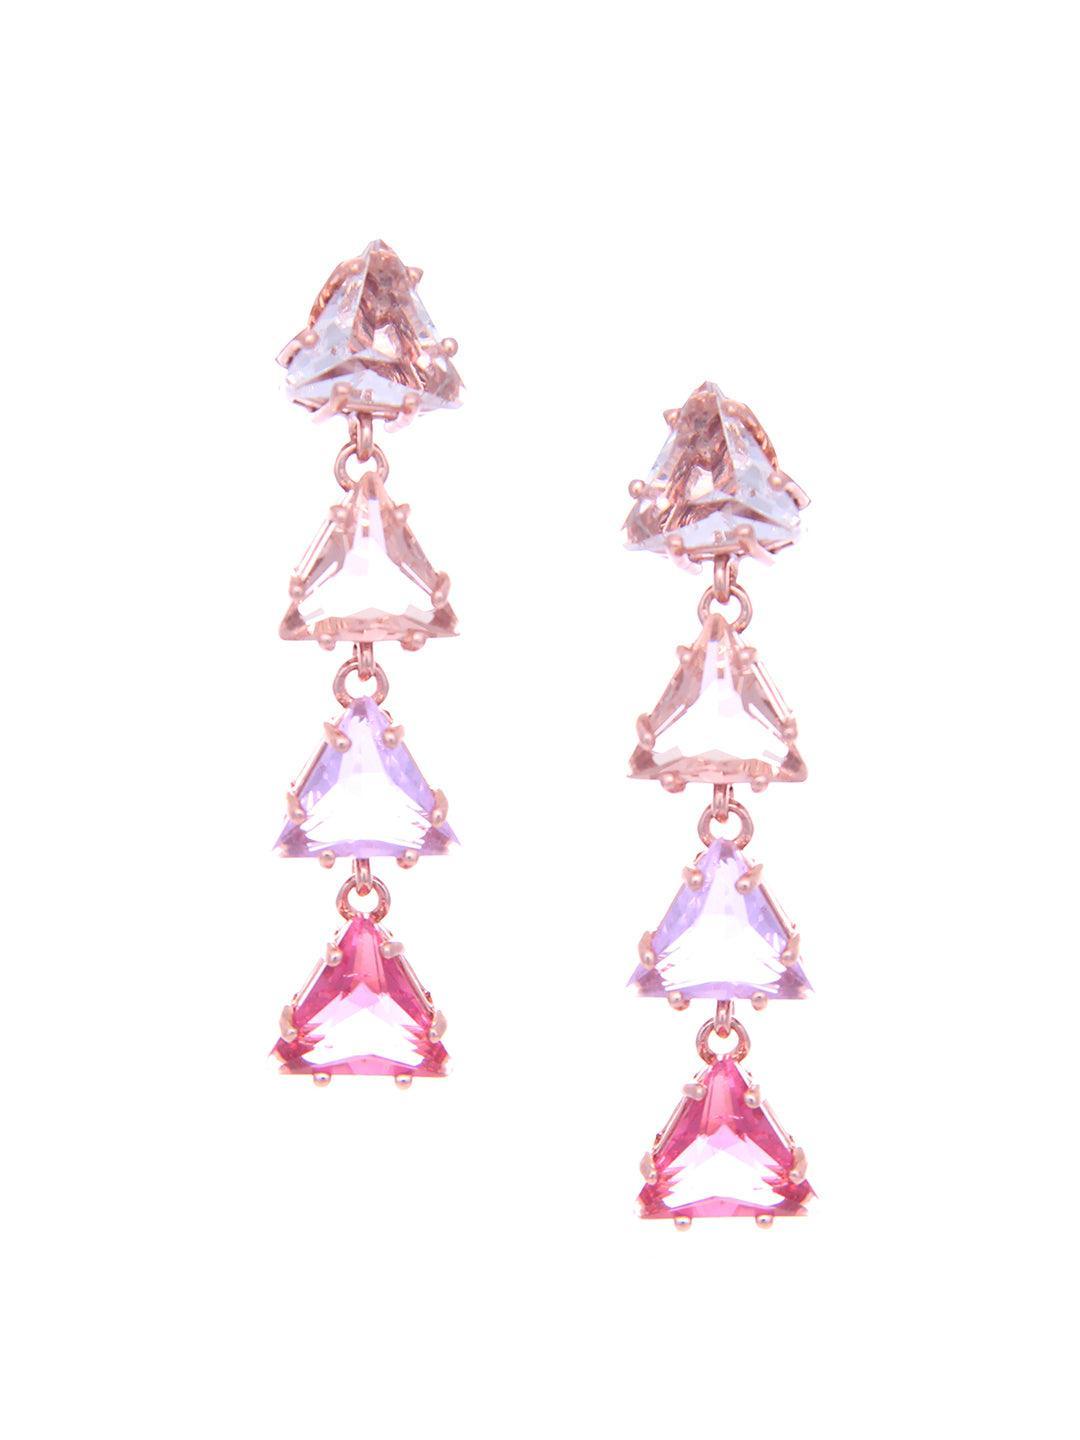 Ishhaara Akriti Kakar In Triangle 4 Tiered Pastel Earrings Pink